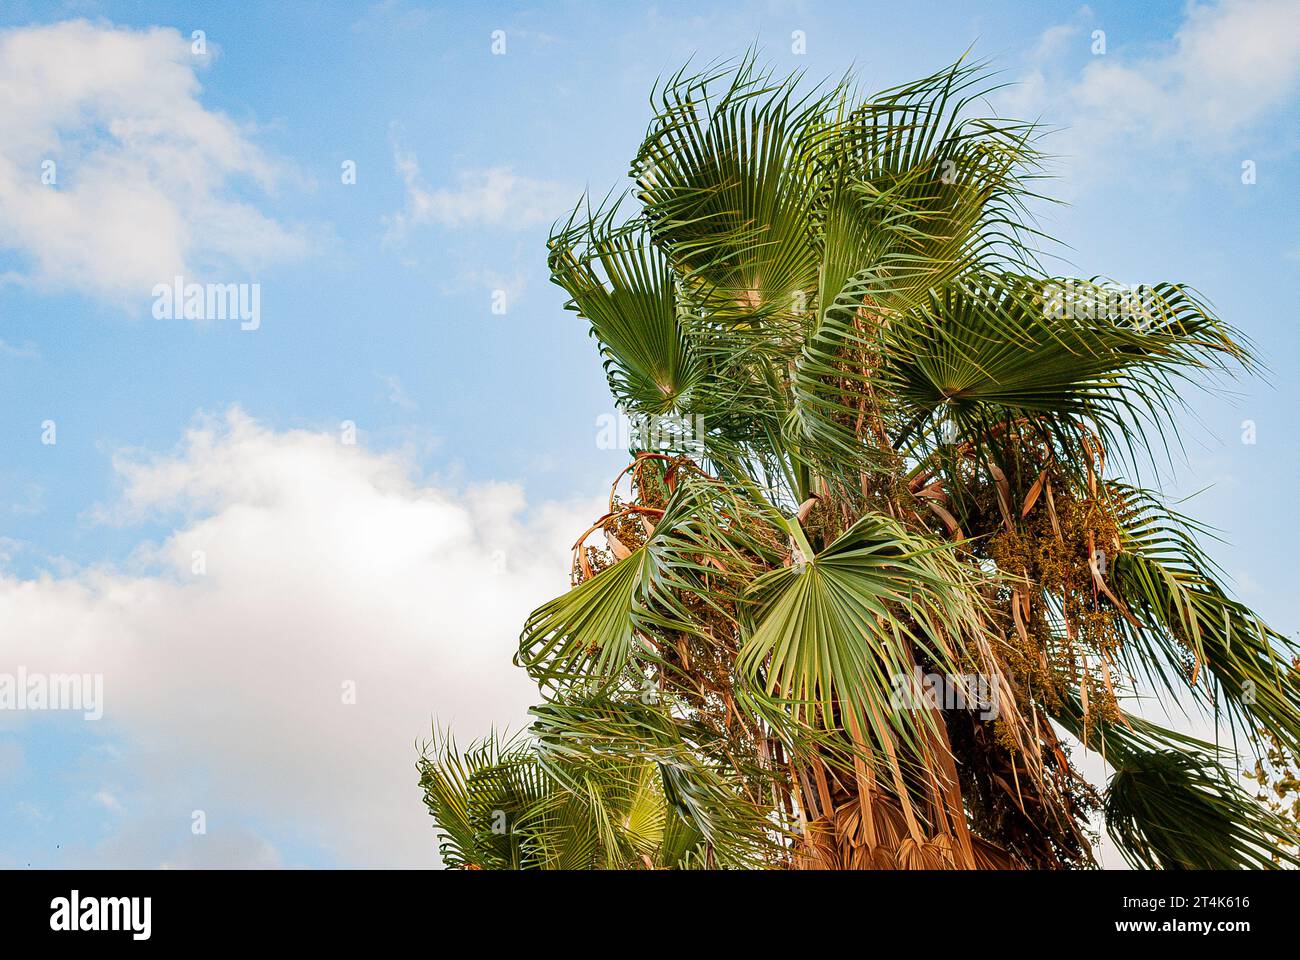 Sotto il cielo azzurro, all'ombra della grazia della palma, trova conforto e ispirazione nella bellezza della natura, sullo sfondo delle palme Foto Stock